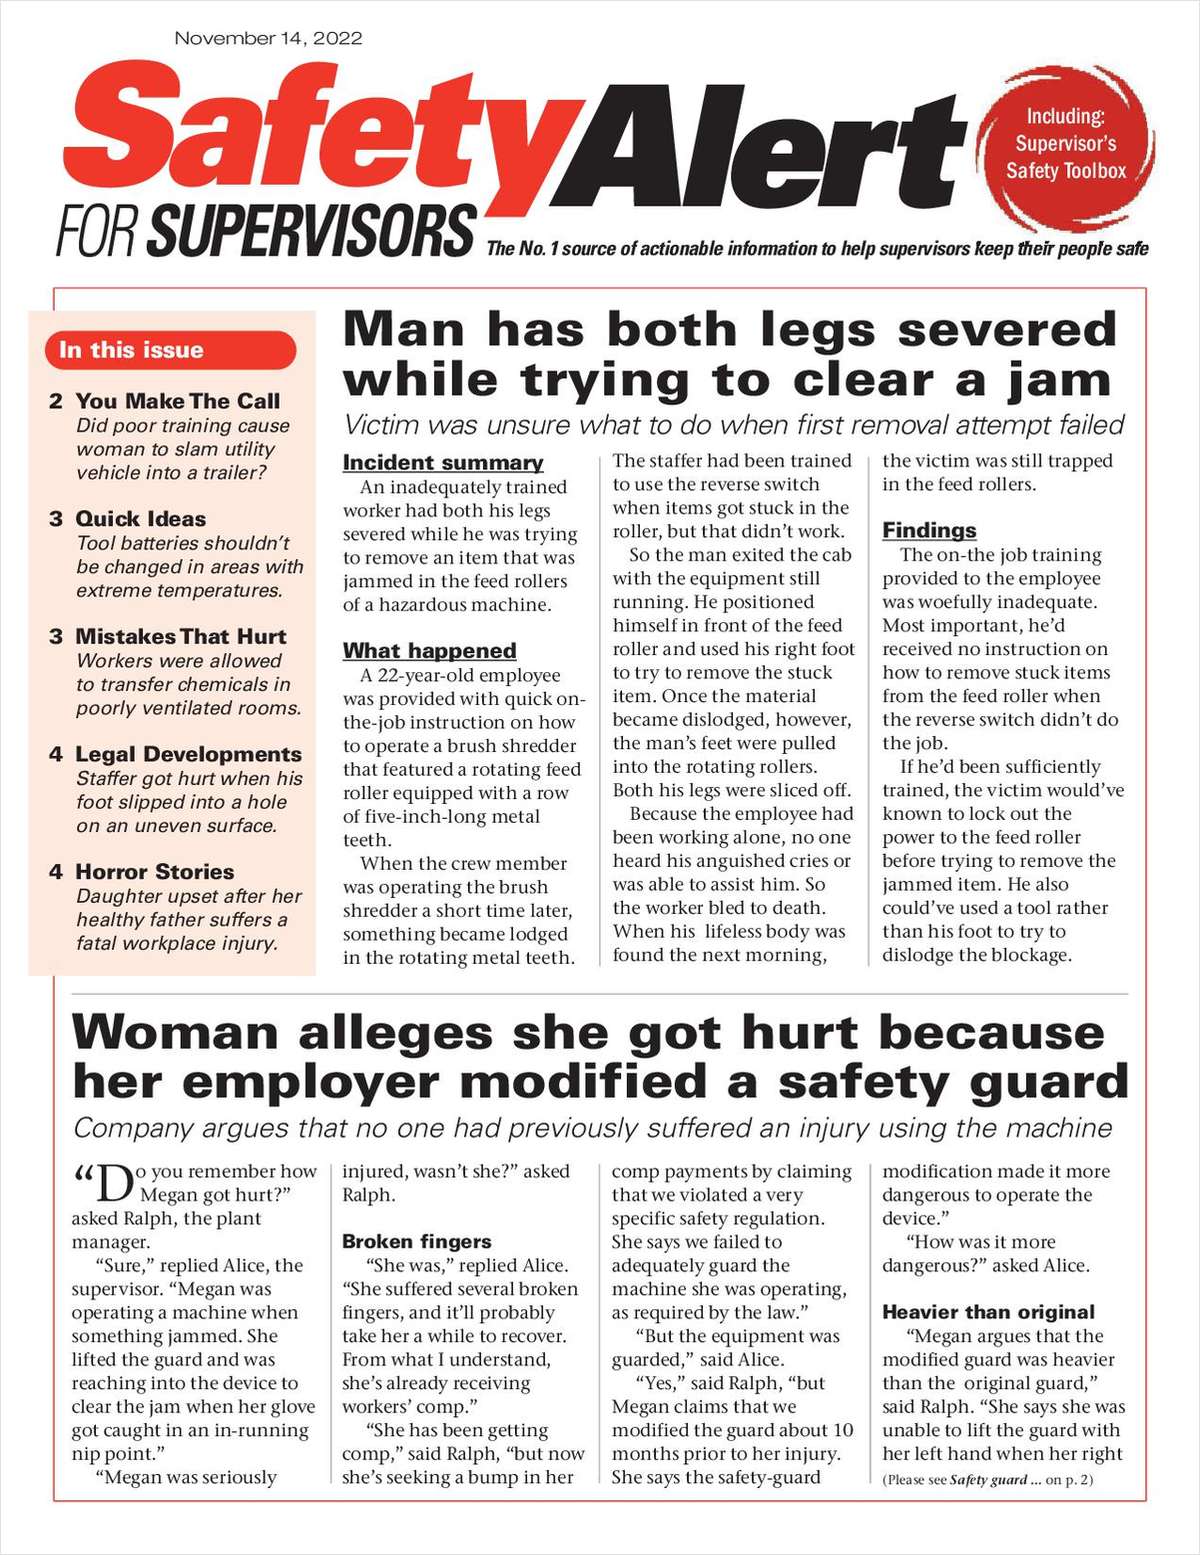 Safety Alert for Supervisors Newsletter: November 14 Issue